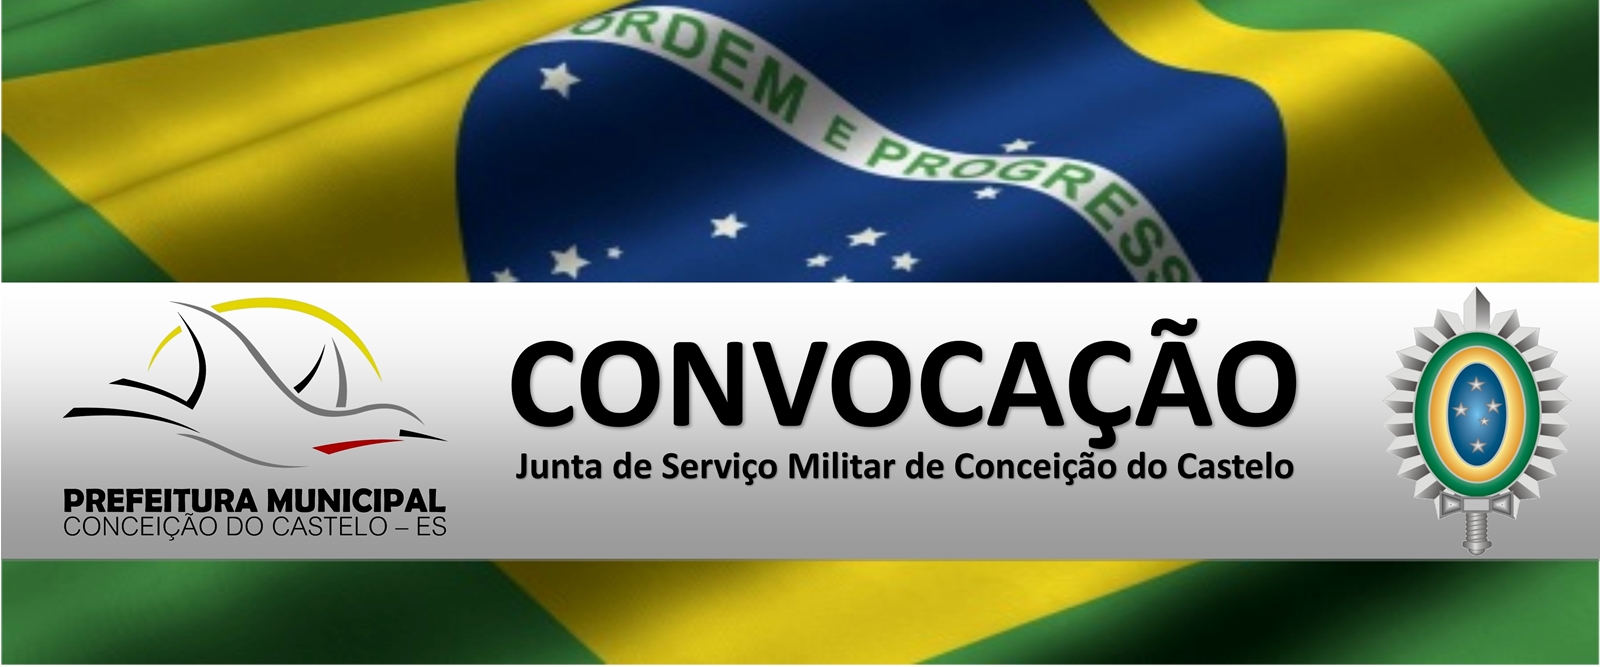 A Junta de Serviço Militar de Conceição do Castelo realiza convocação dos jovens conceiçoenses